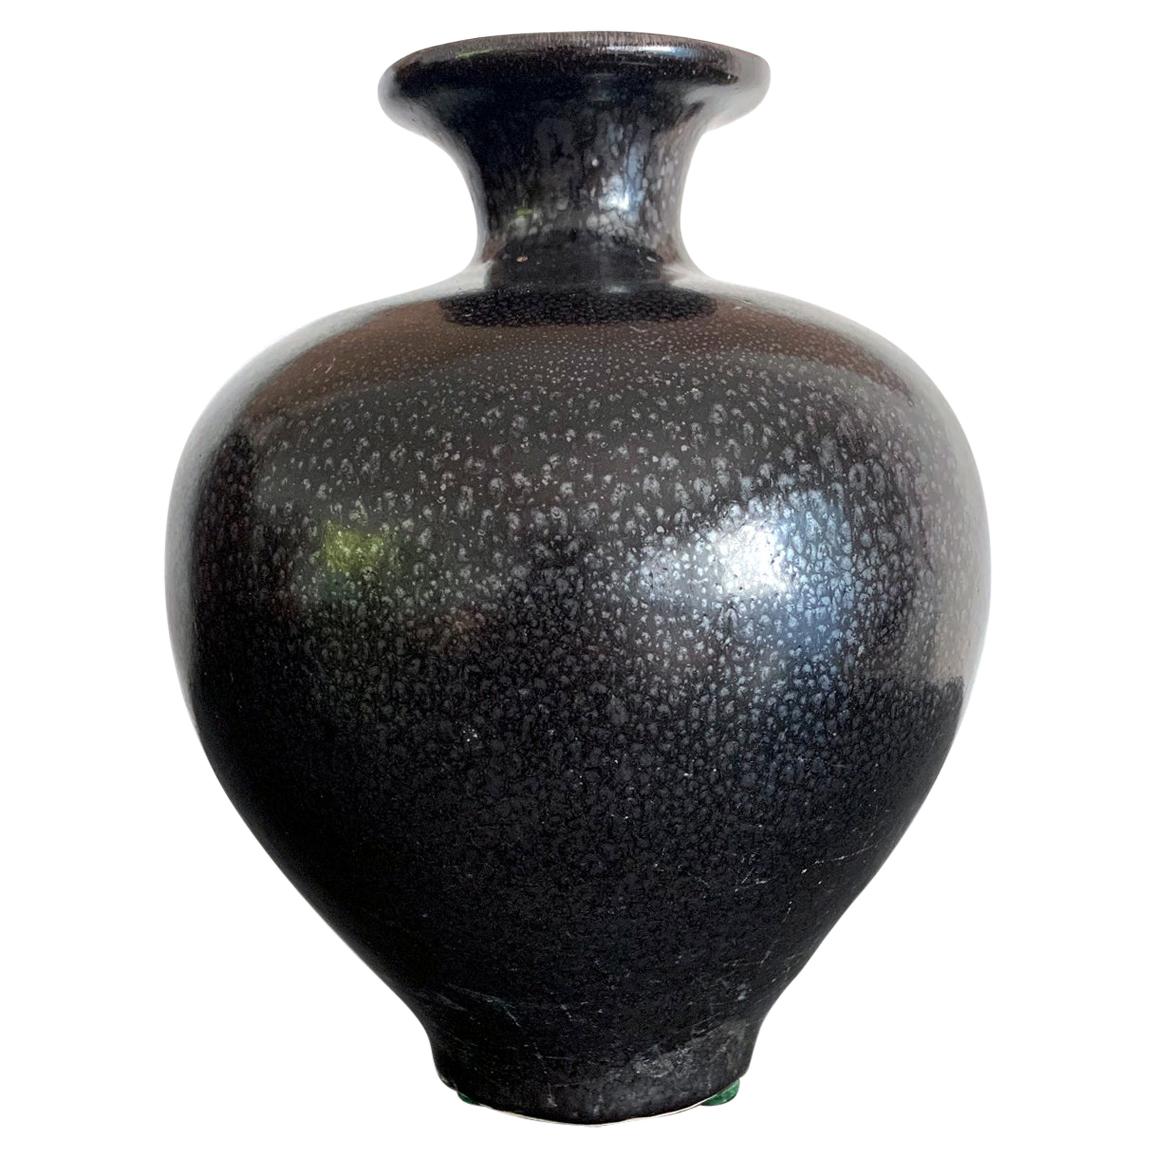 Black Ceramic Vase with Oil-Spot Glaze Jian Ware